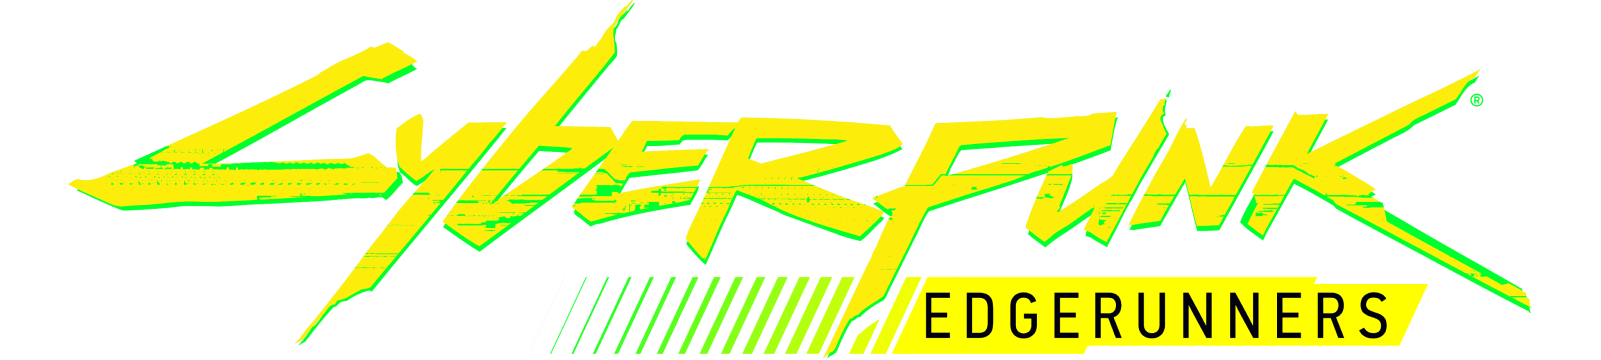 logo-edgerunners@2x-9b8f81d2.png